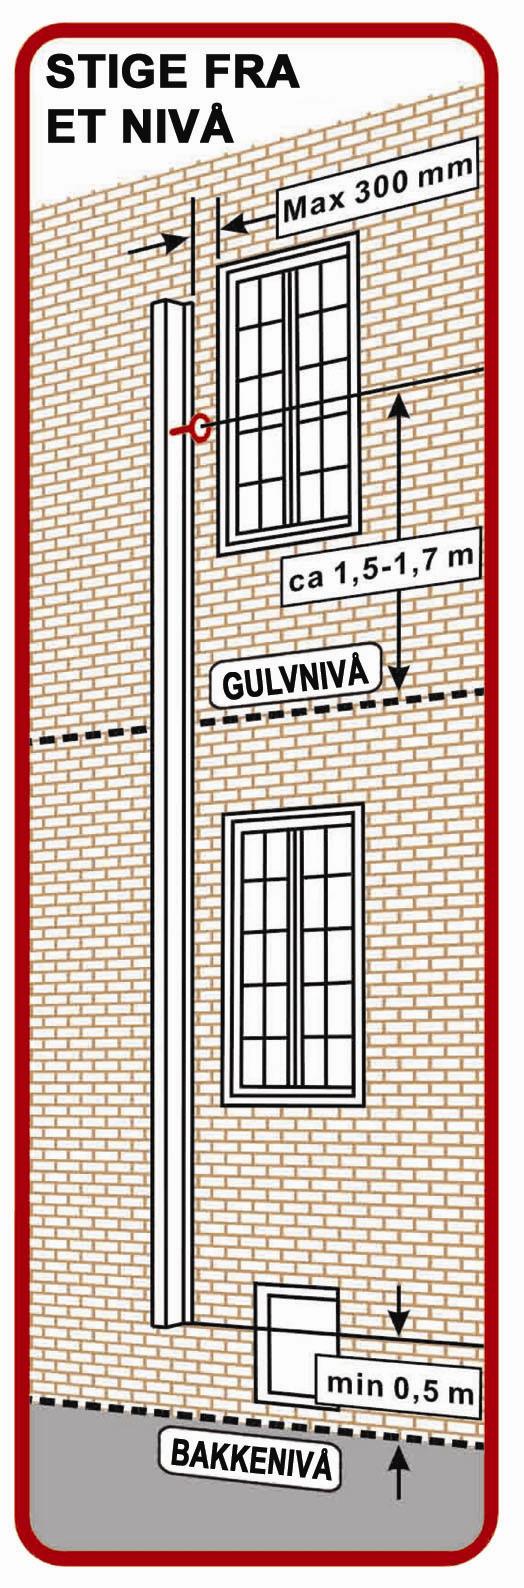 Ved innhukk i fasade eller pyntelist rundt huset, brukes veggbrakett som leveres i flere størrelser, som utforing for å montere rednings-/brannstige.